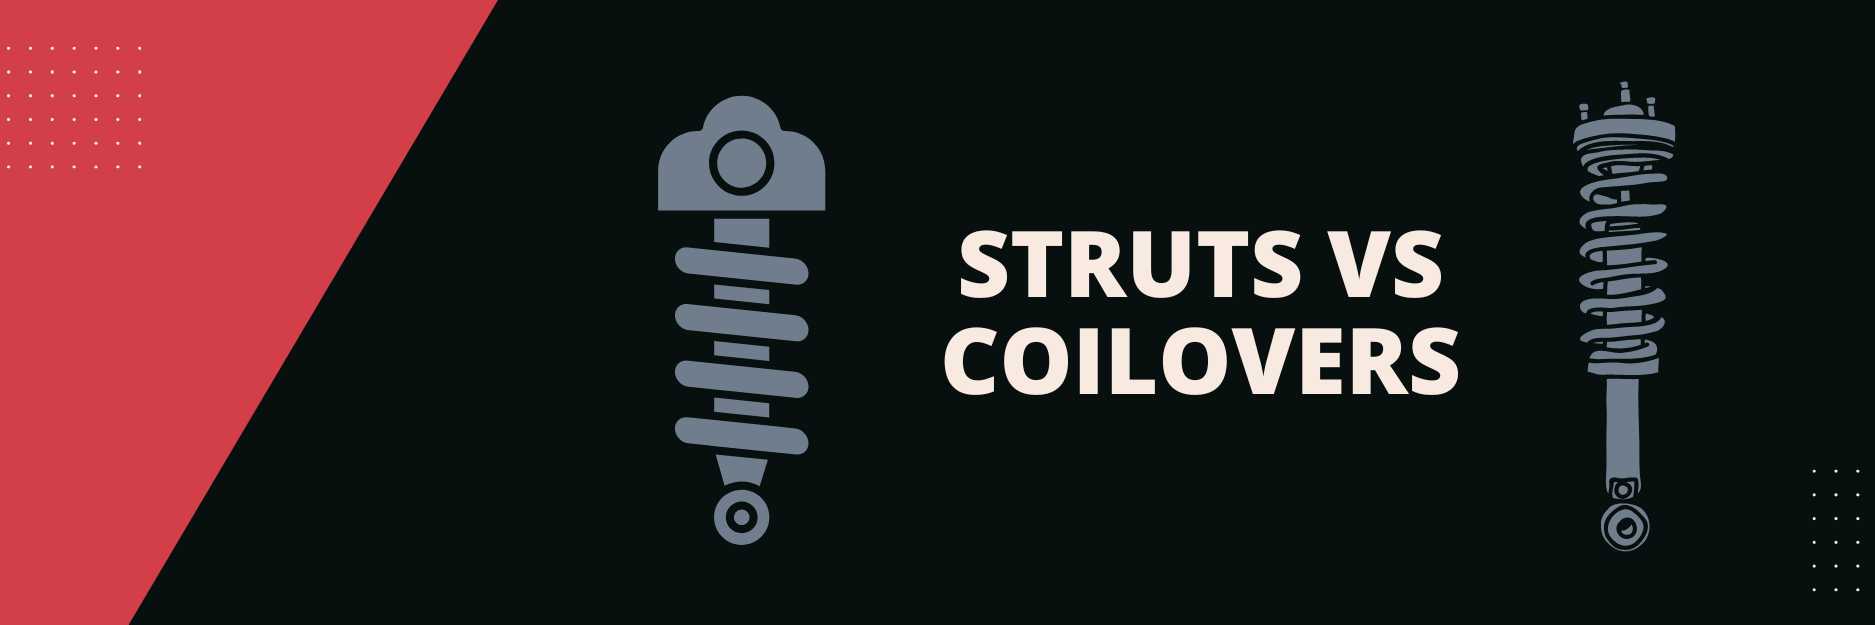 coilovers vs struts